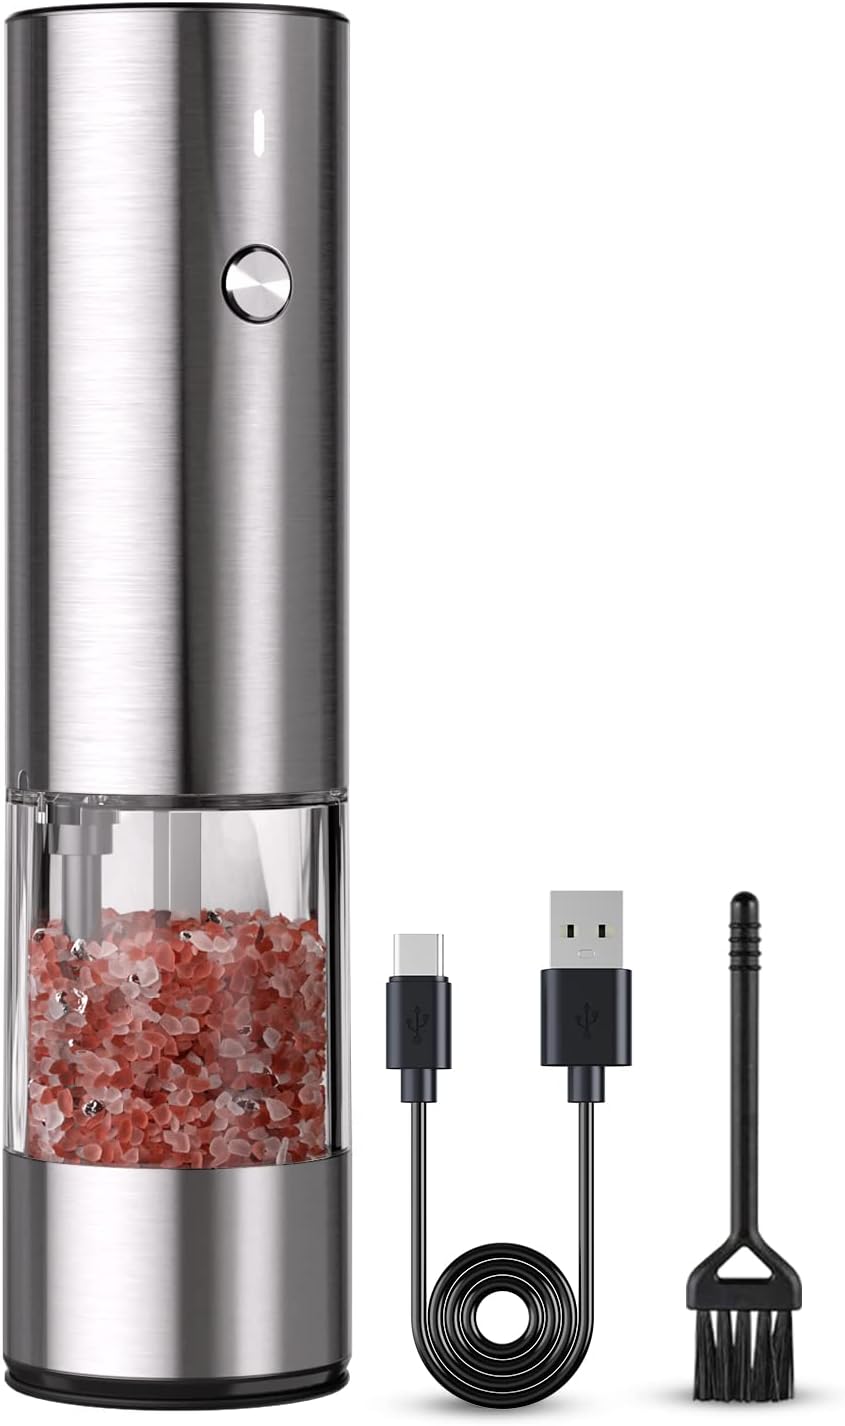 Electric Salt and Pepper Grinder Set, USB Rechargeable, Automatic Salt and  Pepper Mill Grinder with Adjustable Coarseness, Electric Salt Shakers, LED